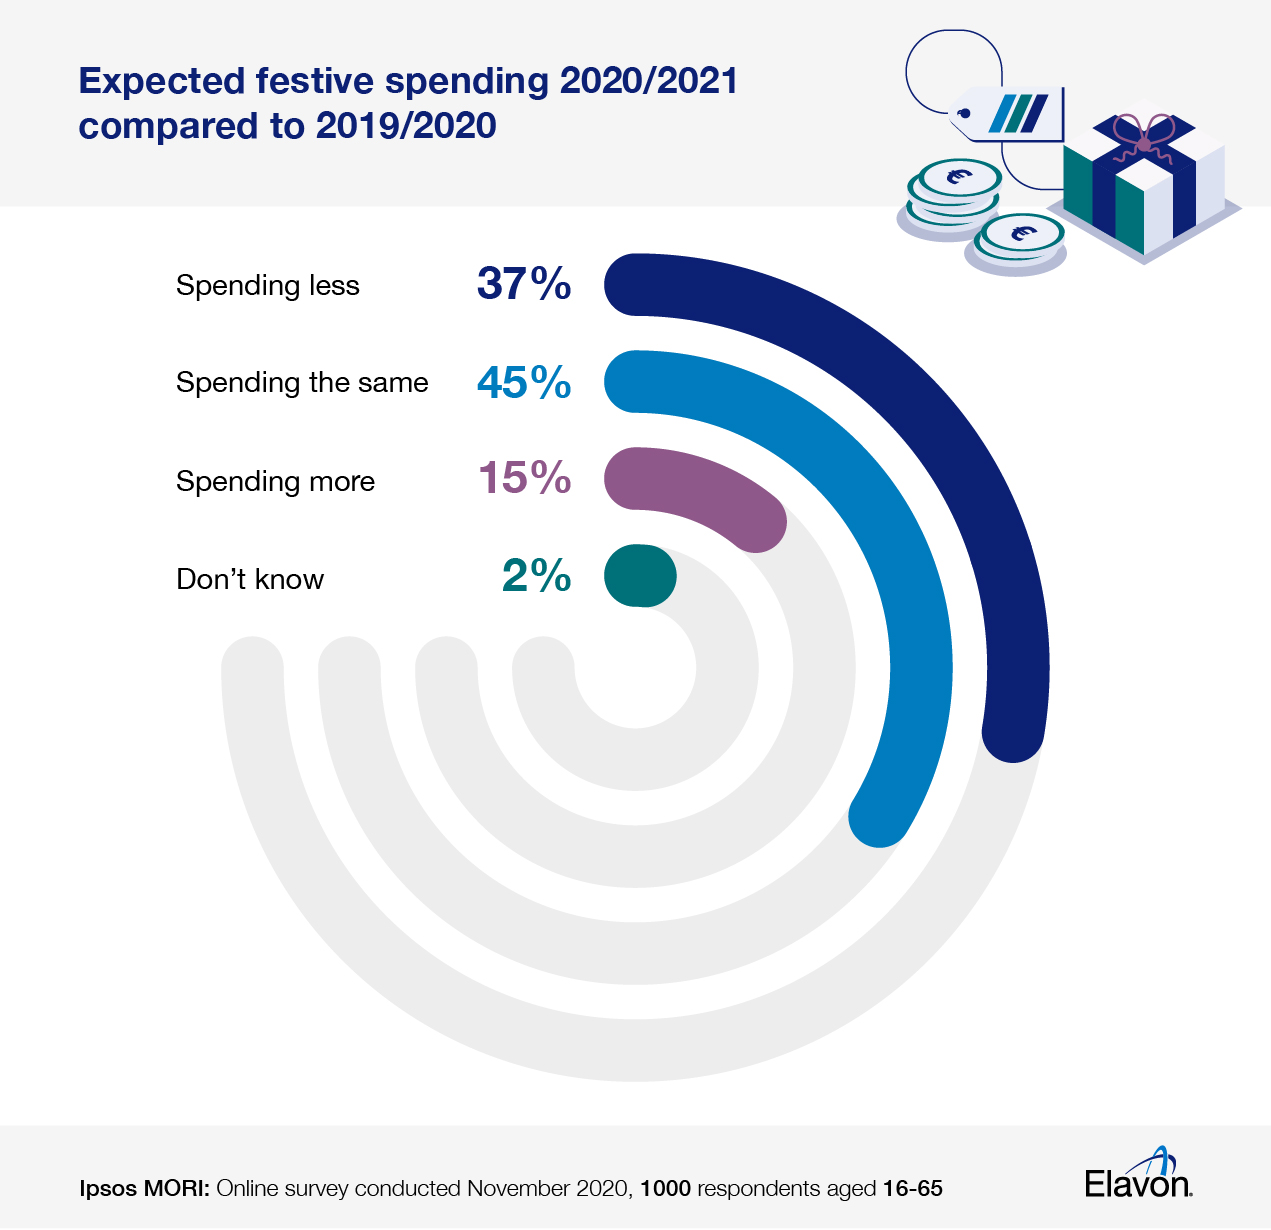 Festive spending